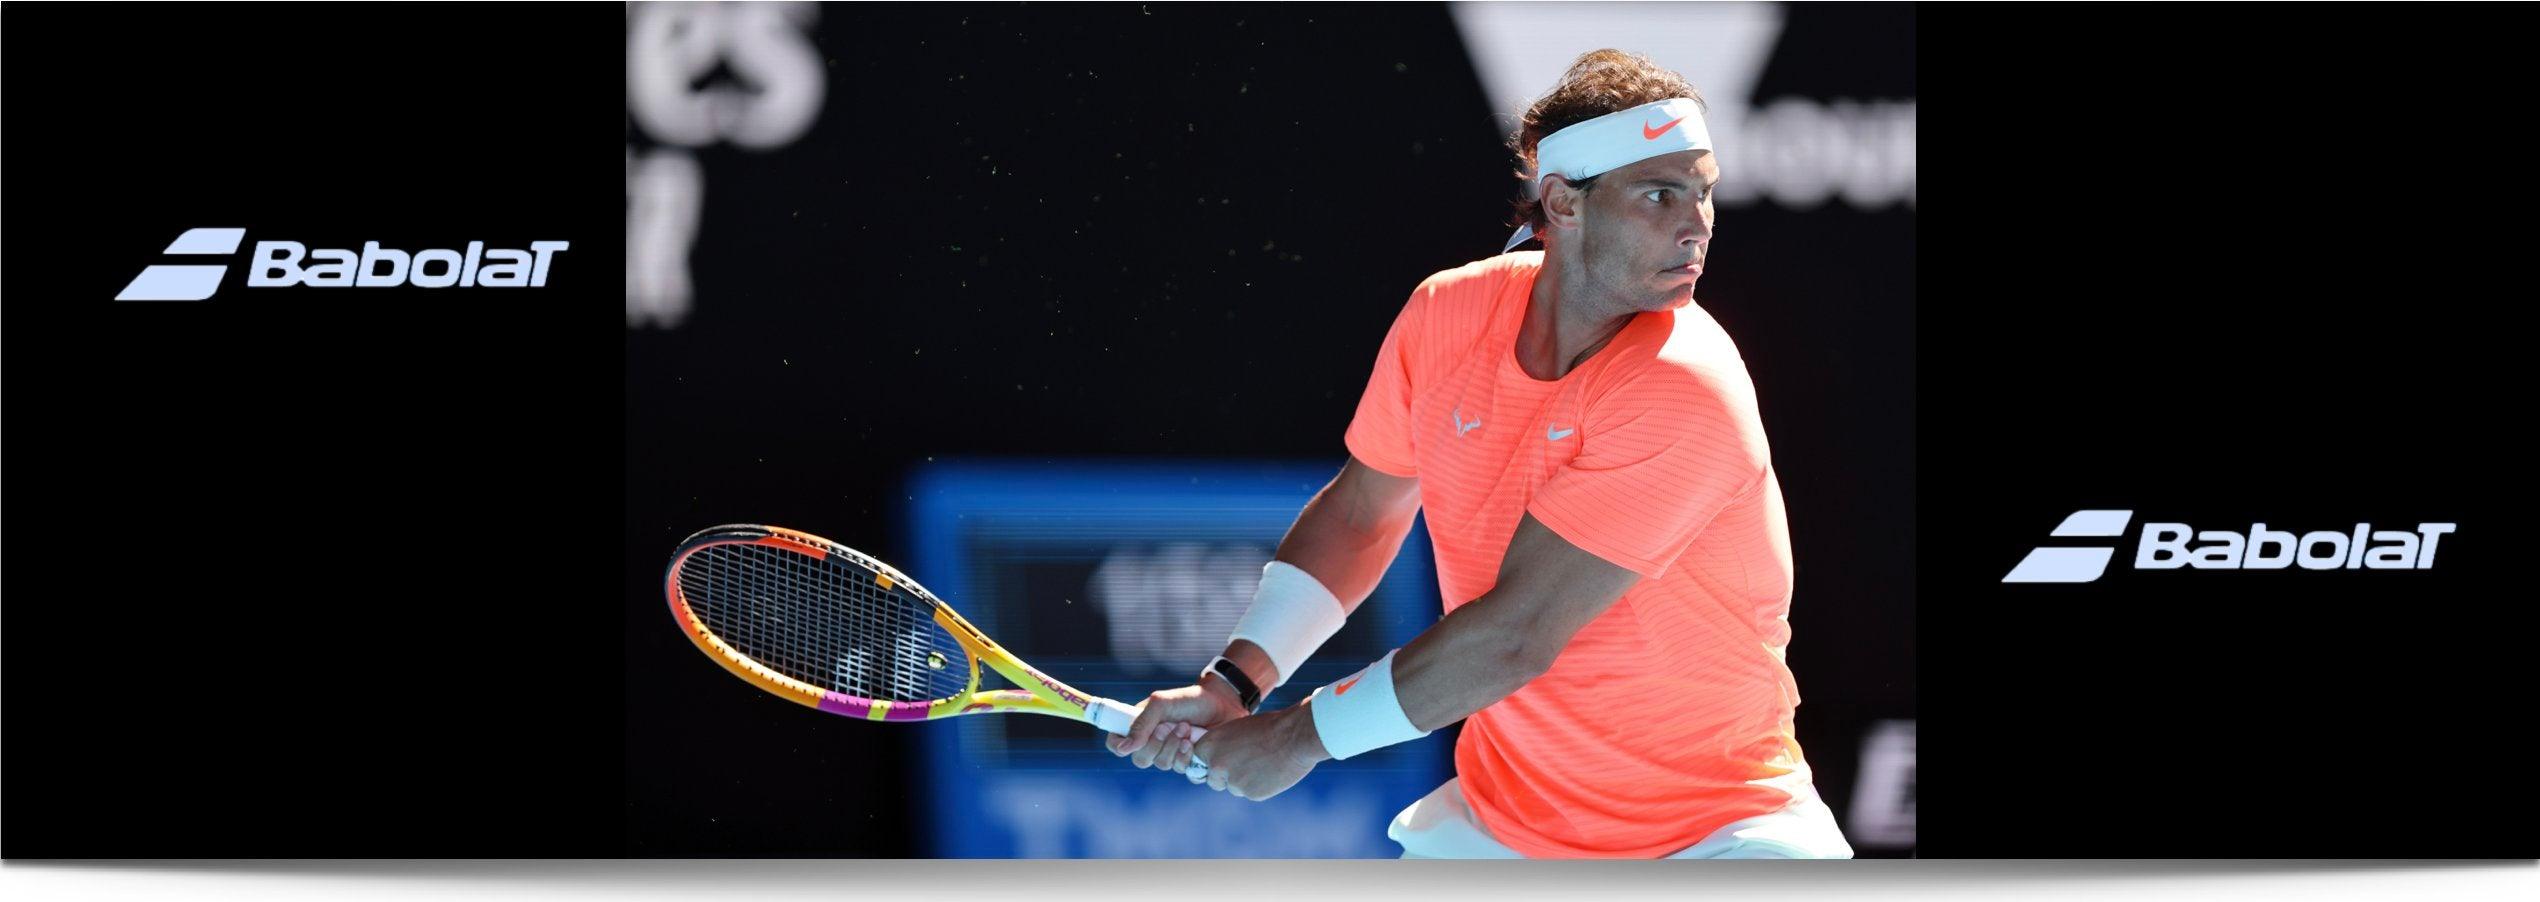 Rafael Nadal Tennis Gear Racquet Point